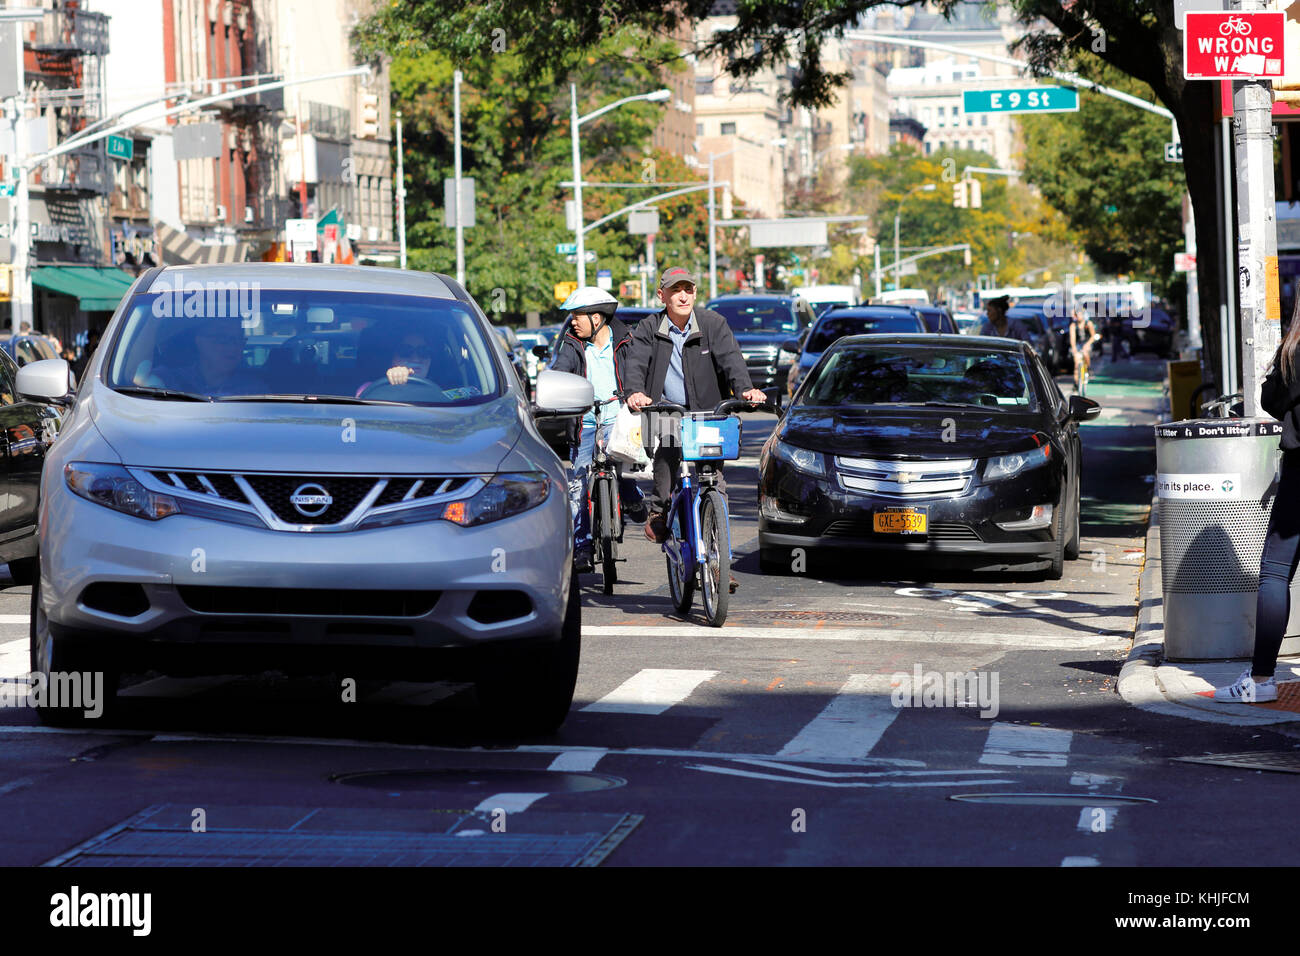 Fahrradfahrer fahren in eine Fahrspur, um ein Auto in der Mitte der Fahrradspur zu vermeiden und gleichzeitig zu vermeiden, dass ein Auto in New York City links abbiegt. Stockfoto